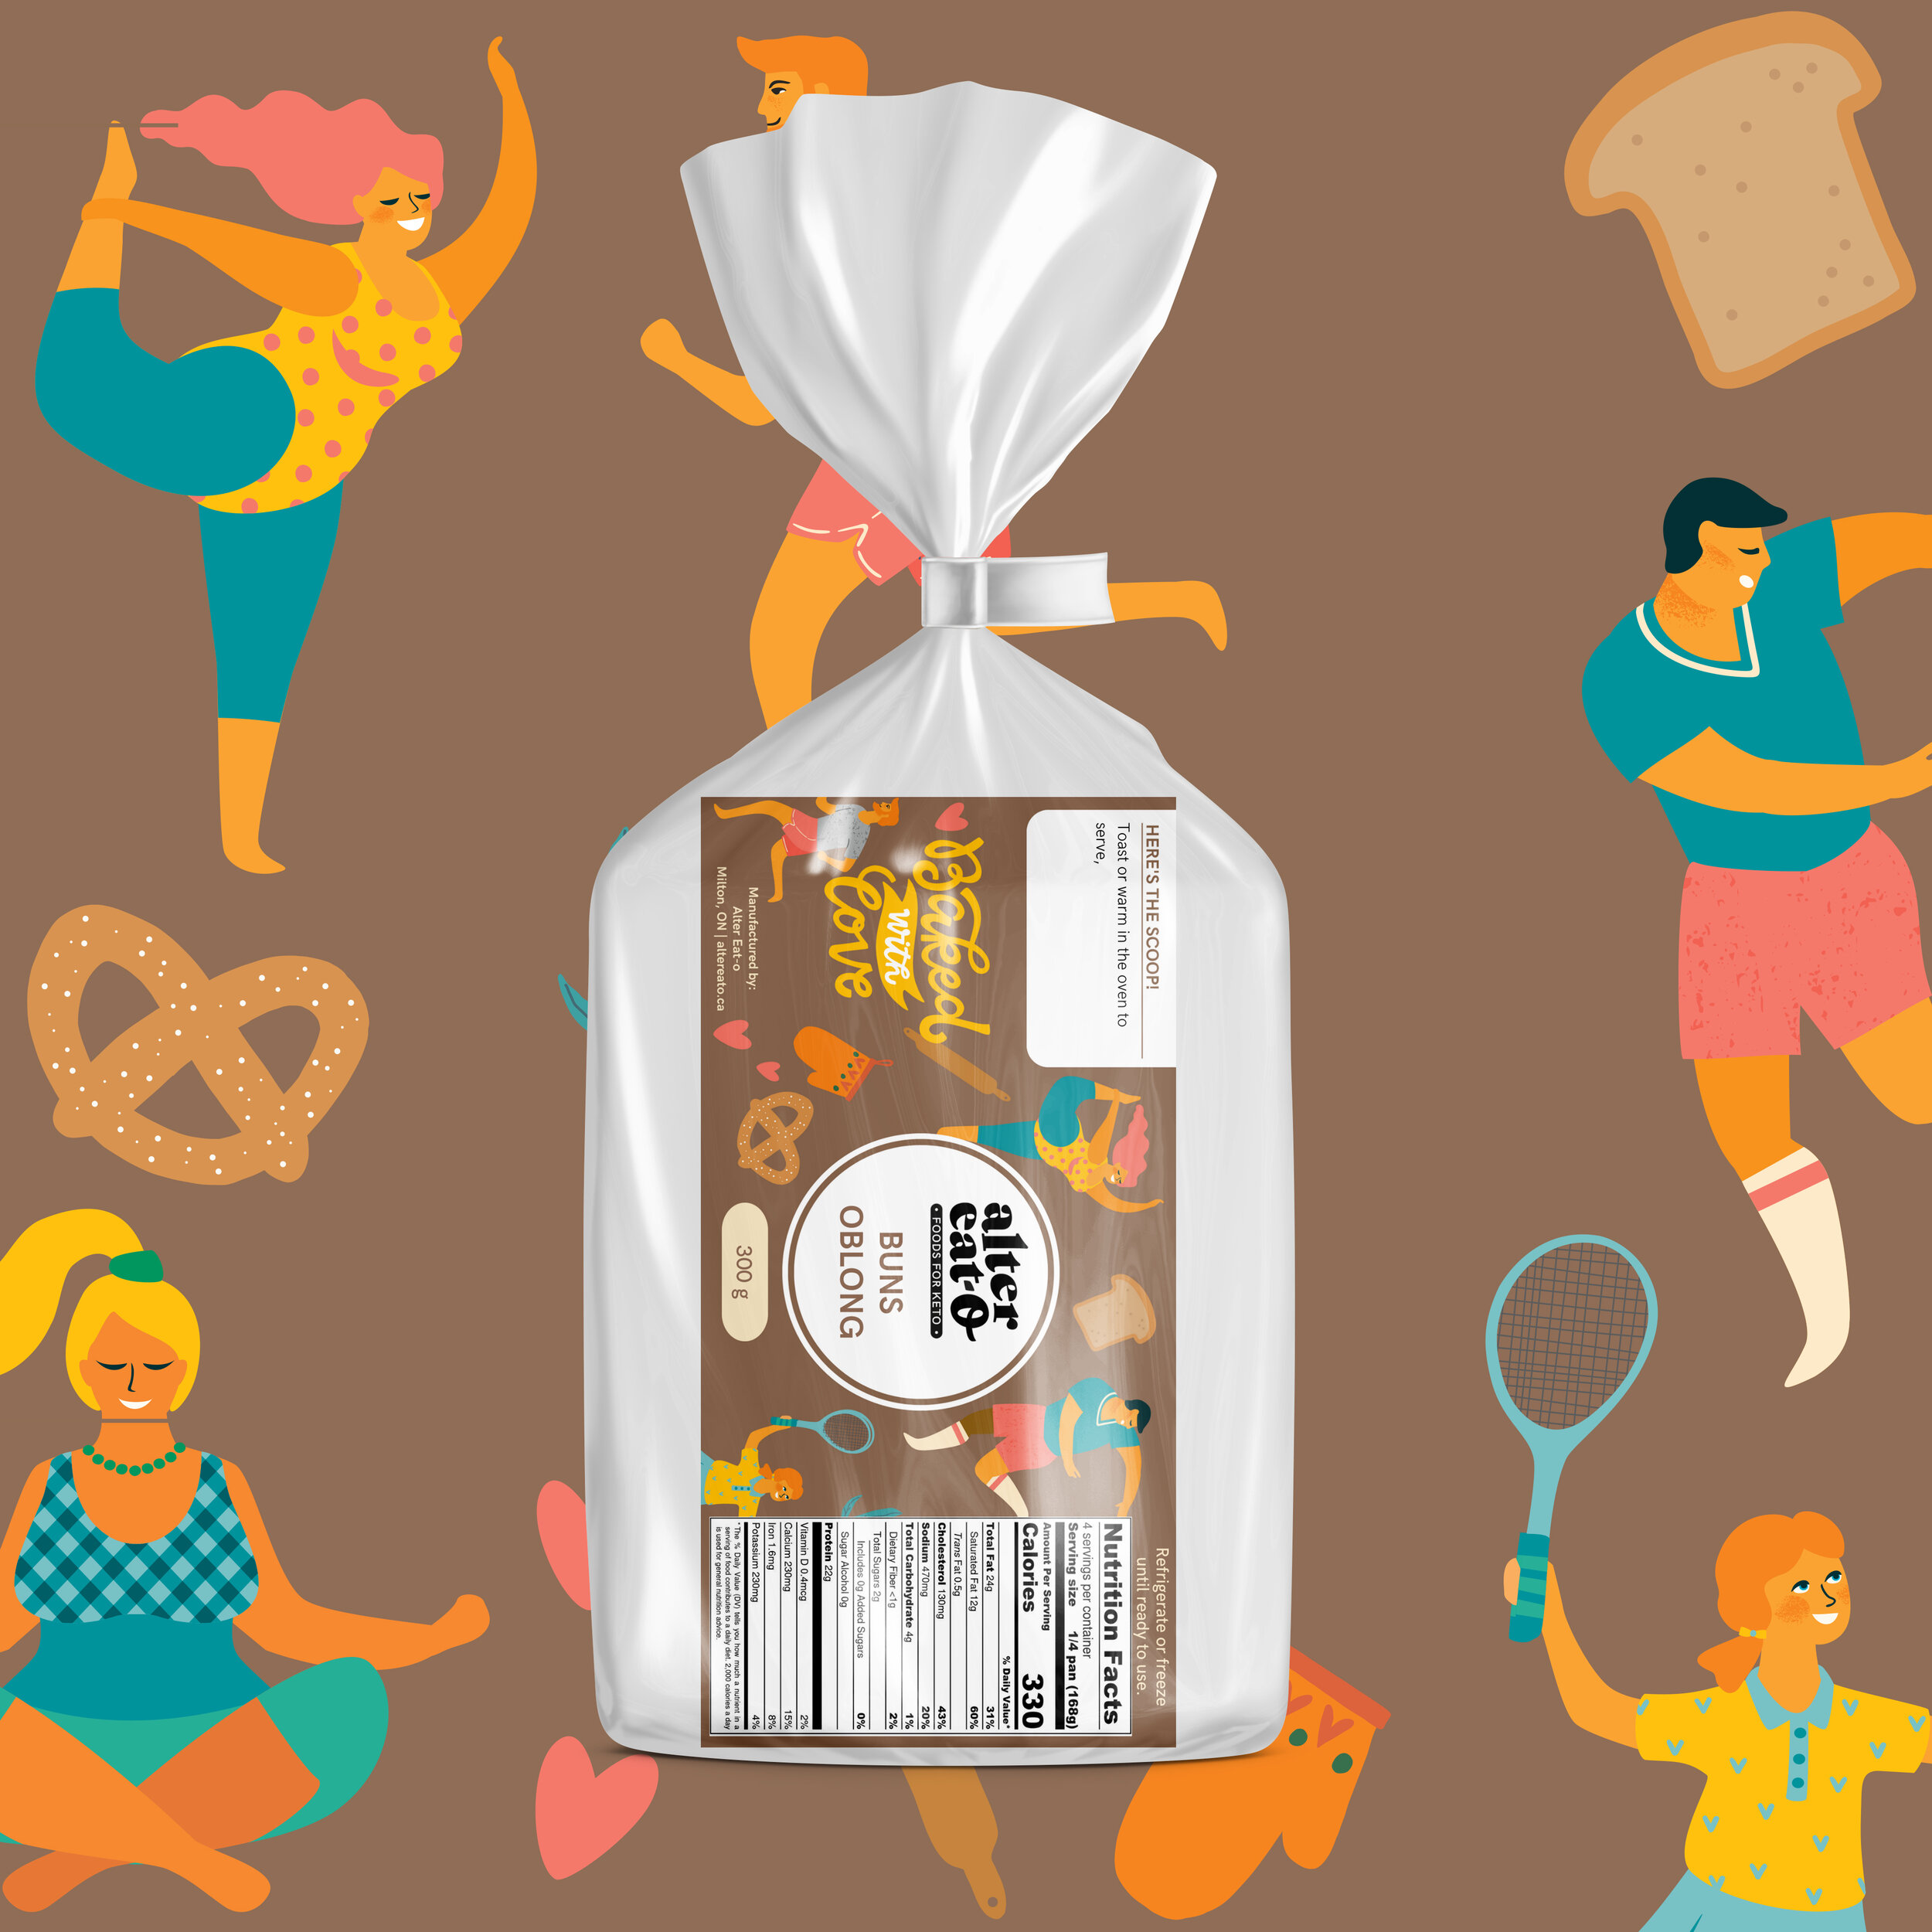 Keto Food Packaging: Breads